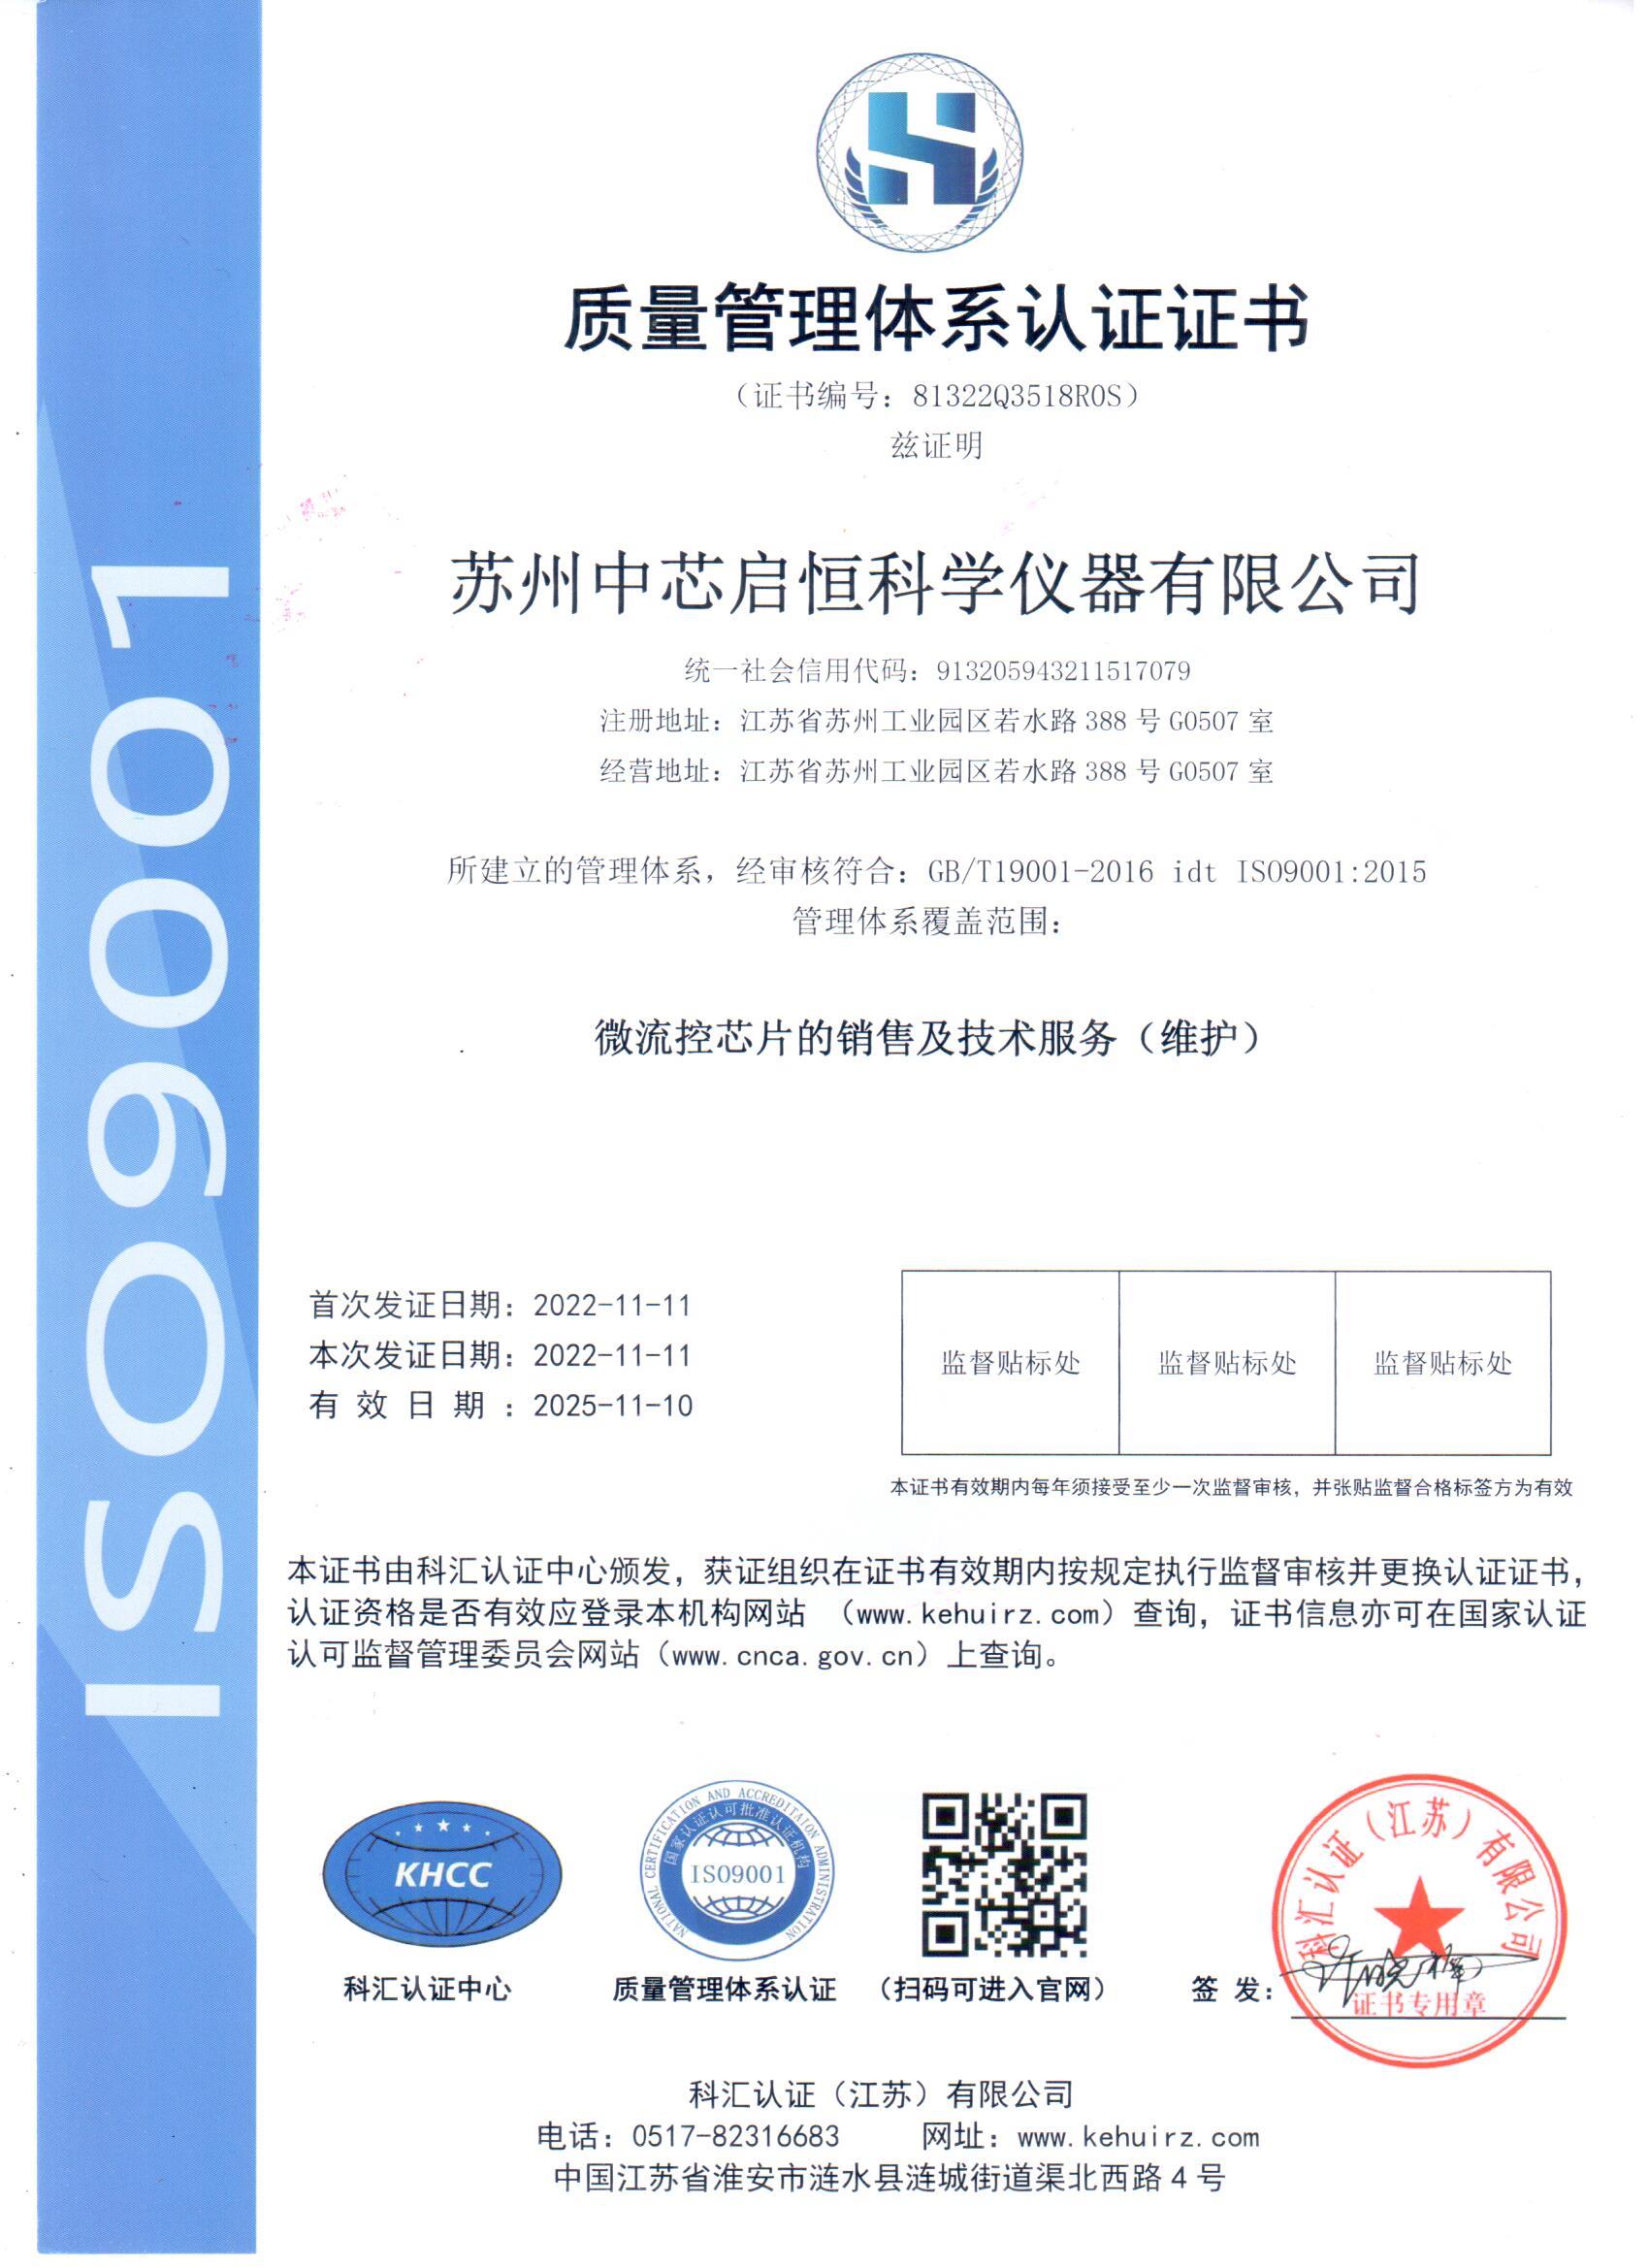 1-启恒仪器-ISO9001体系认证中文原件.jpg